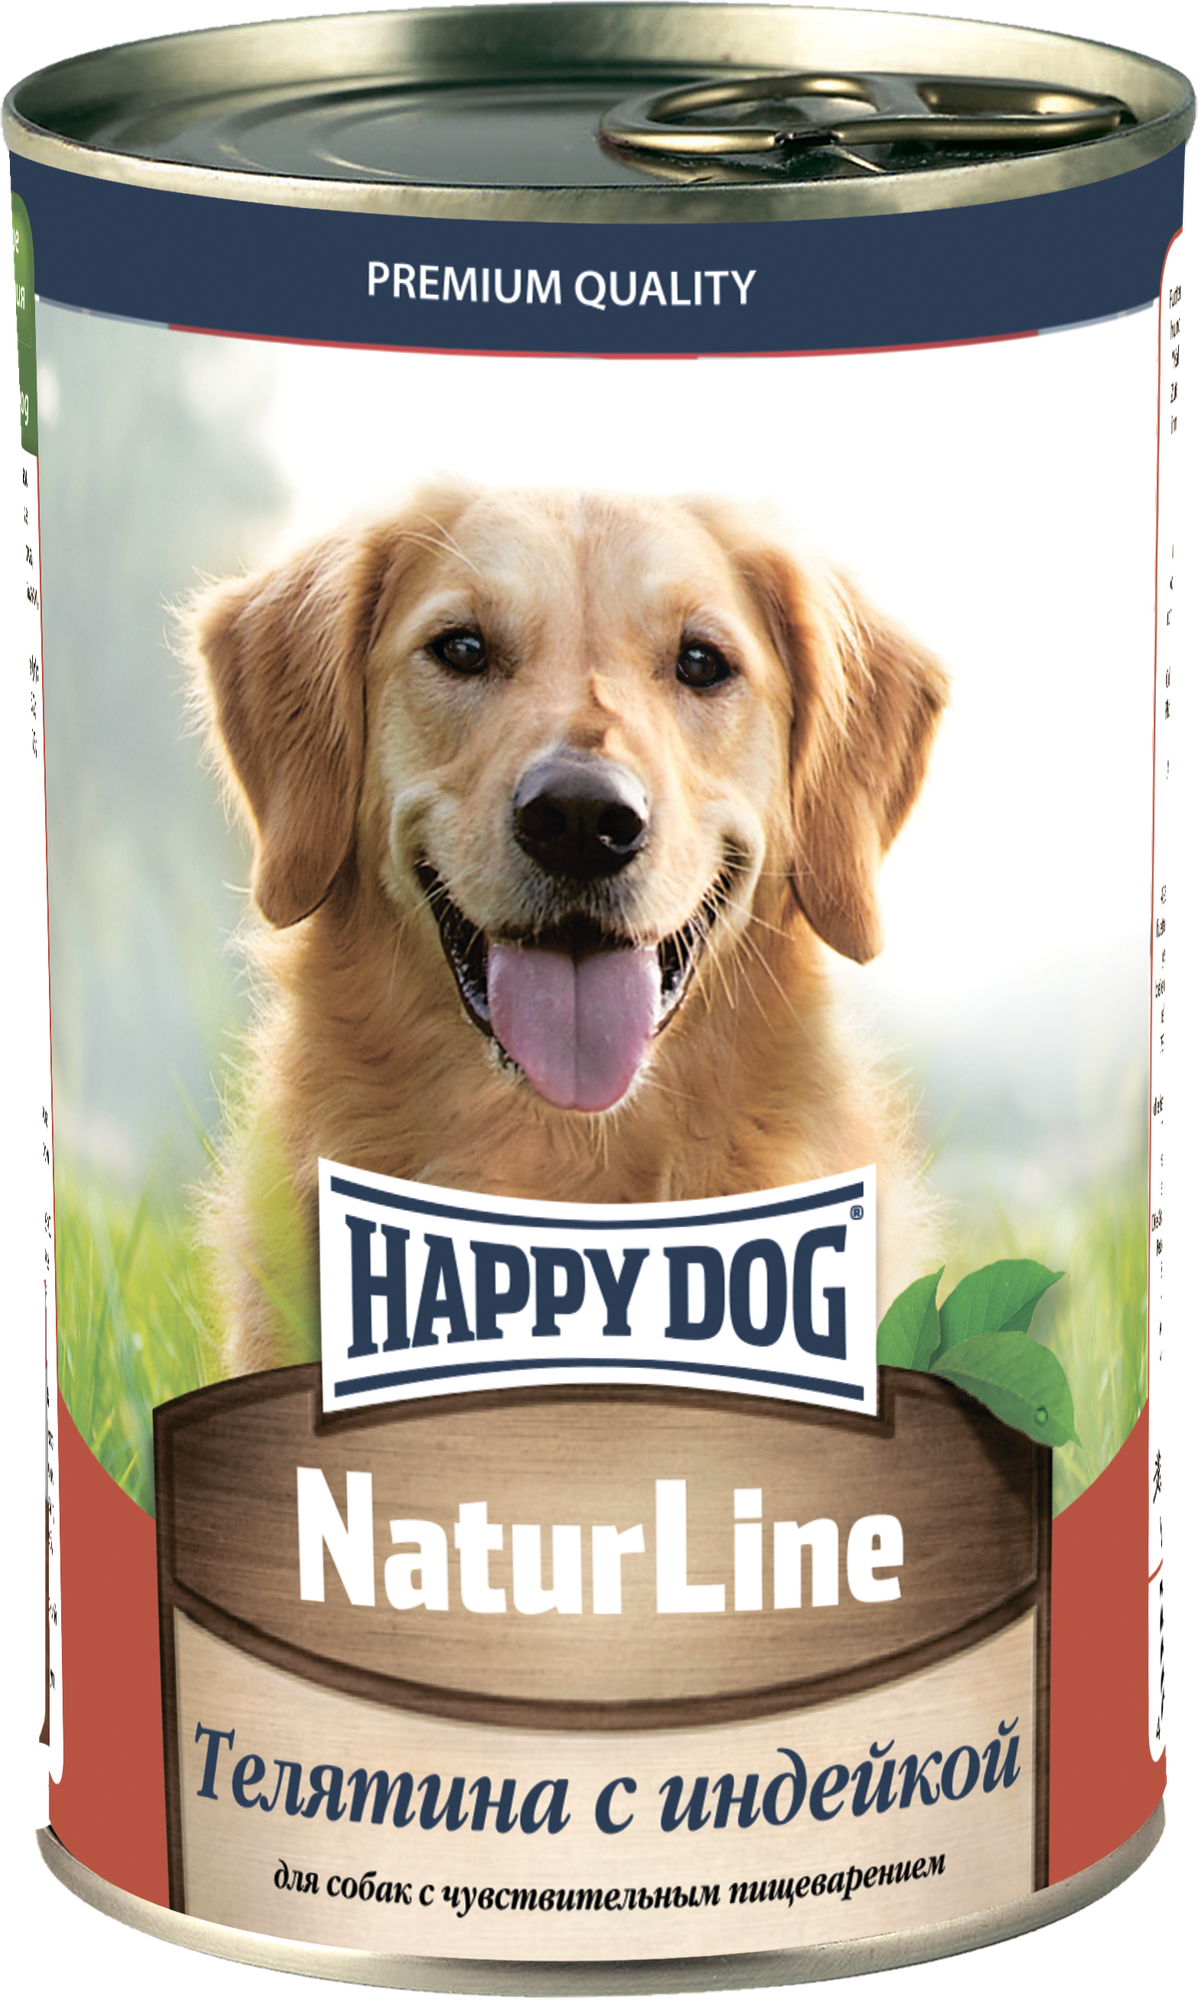 Хэппи Дог Natur Line консервы для собак Телятина с индейкой 410г